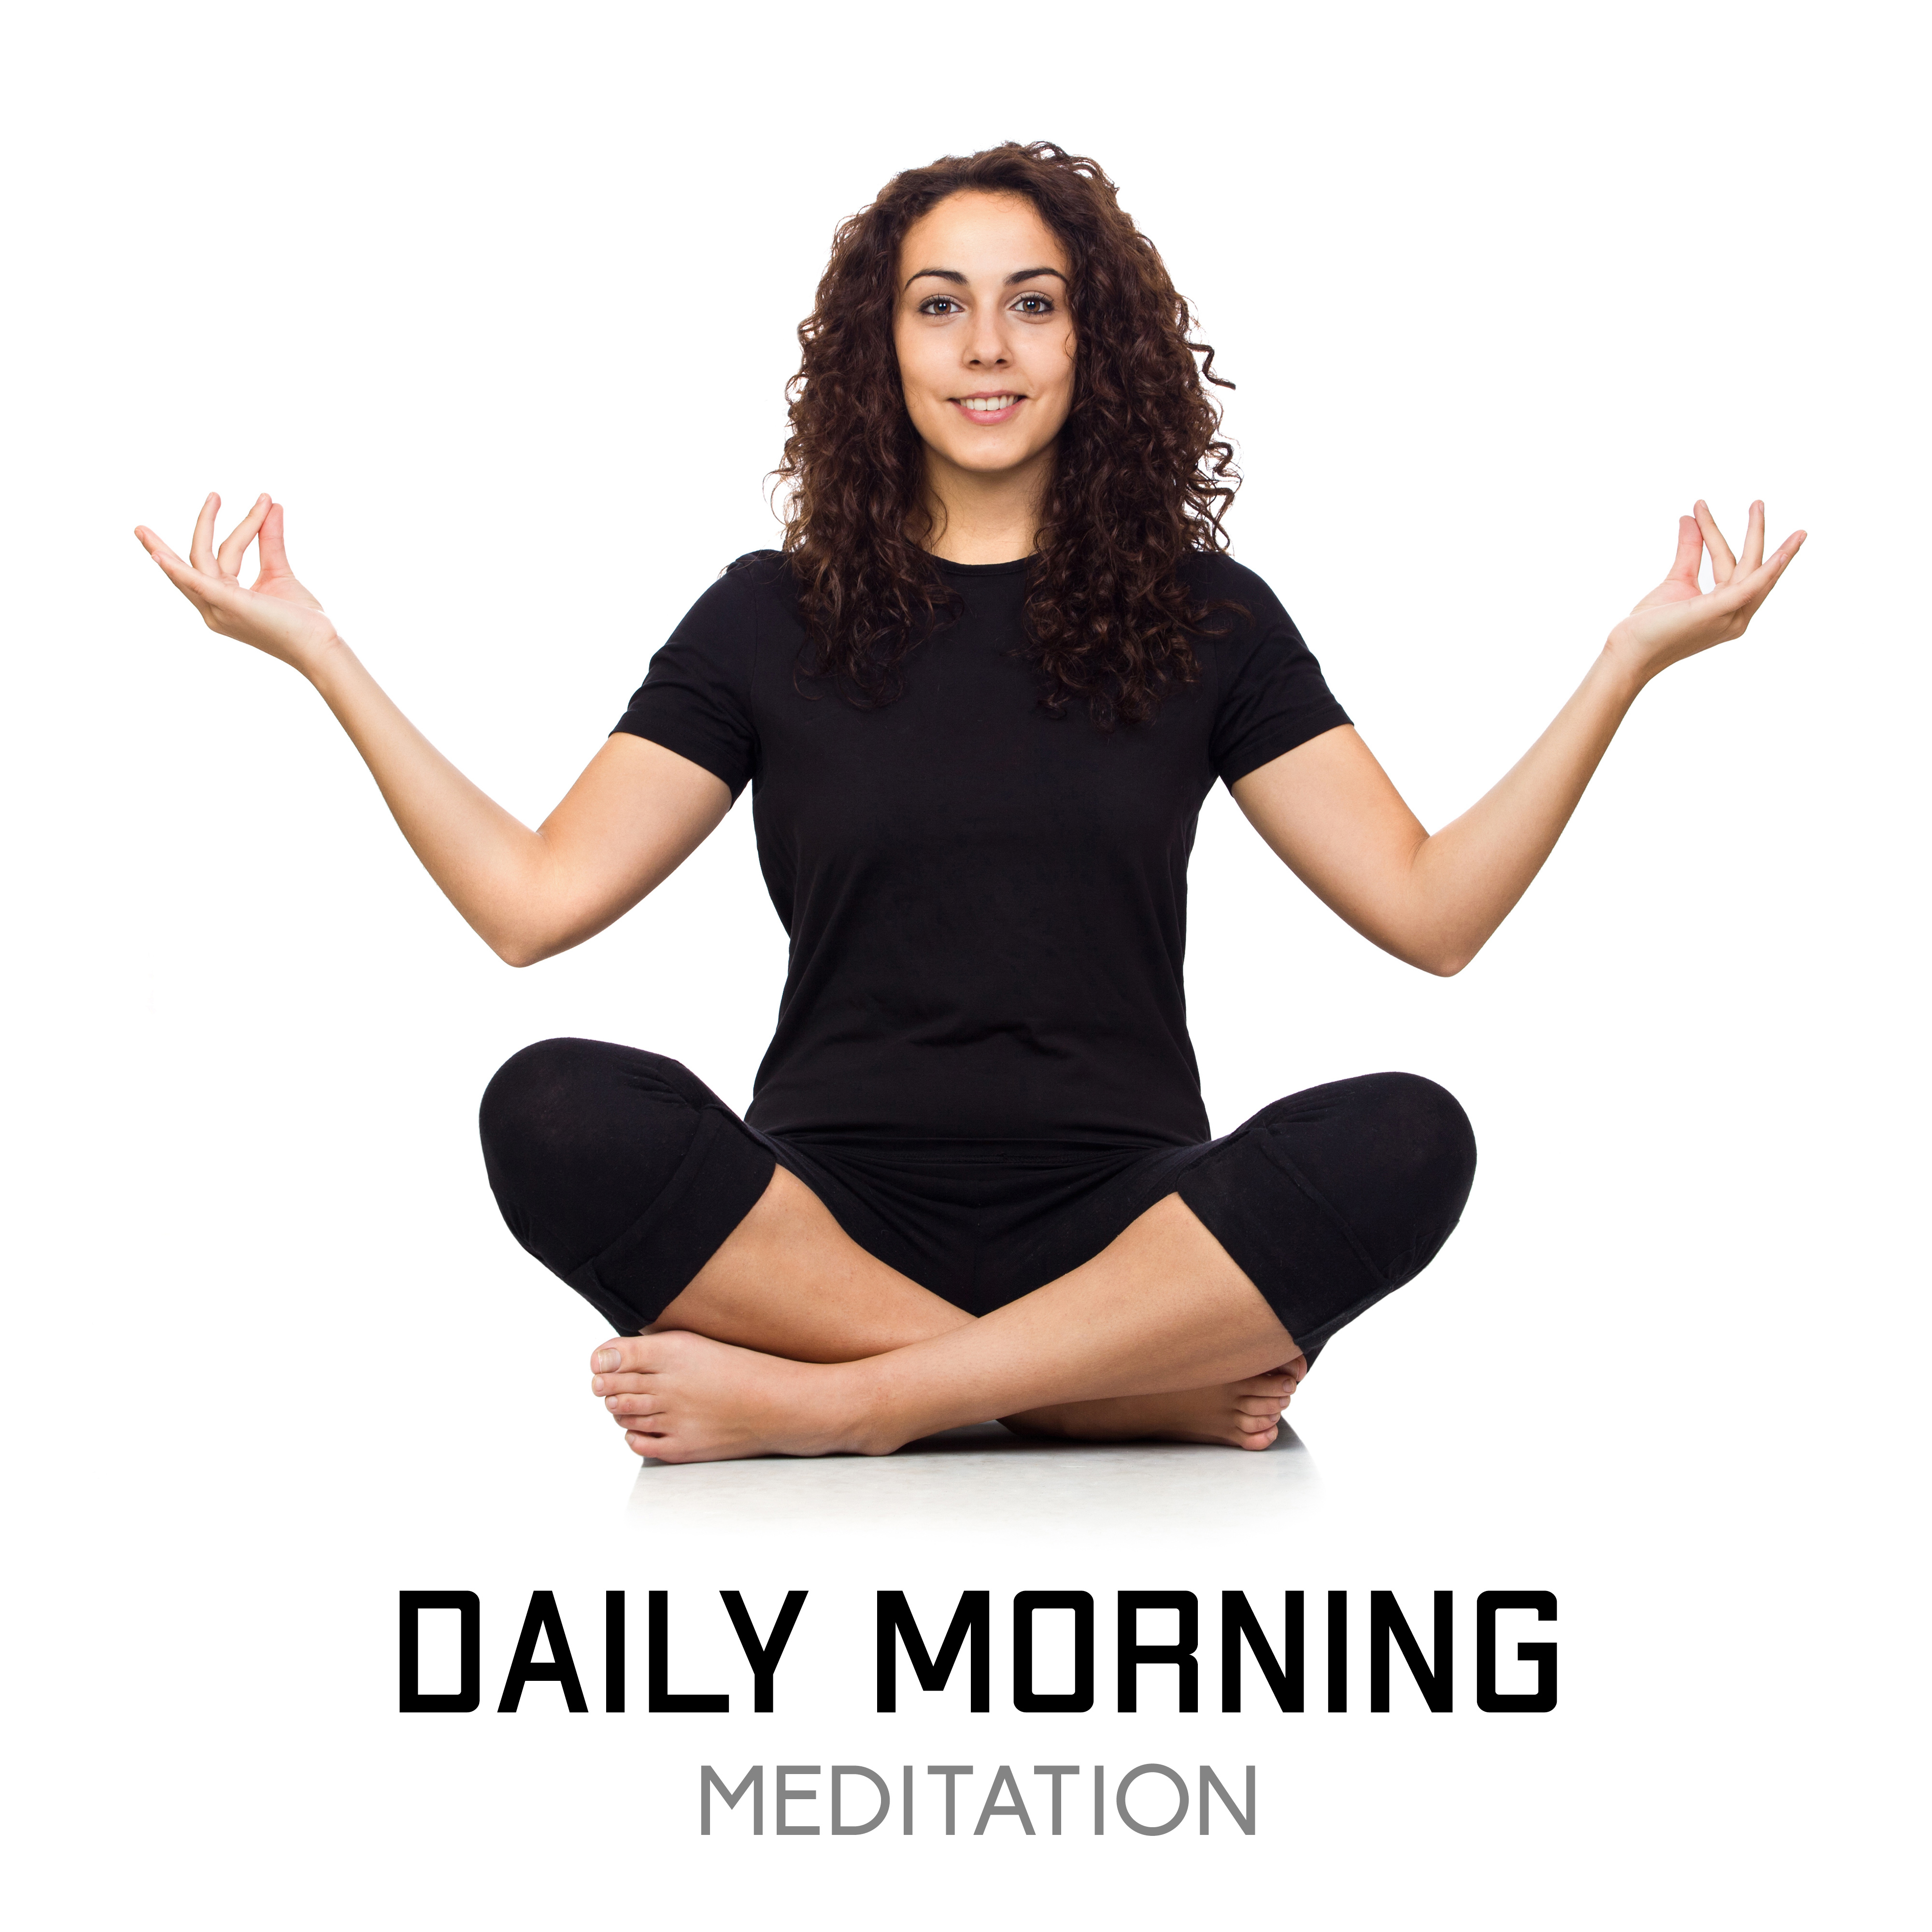 Daily Morning Meditation